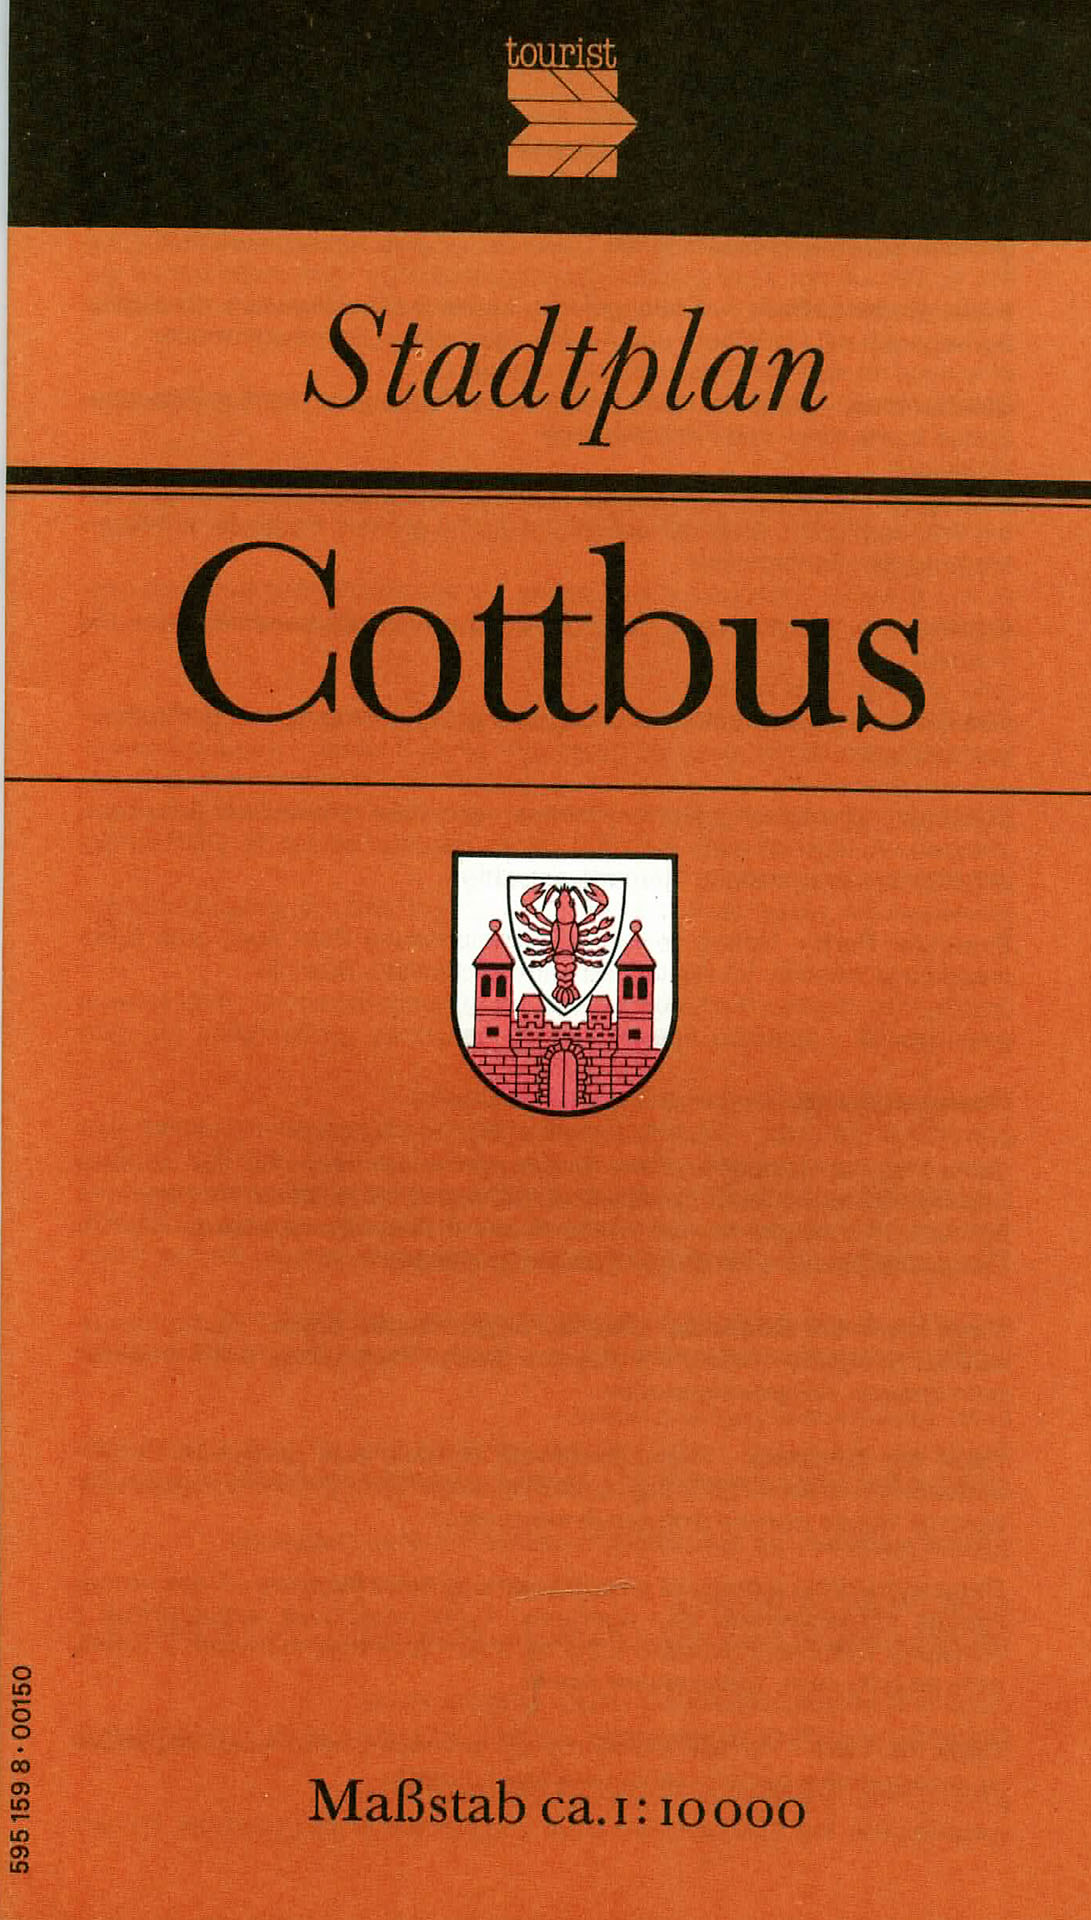 Stadtplan Cottbus